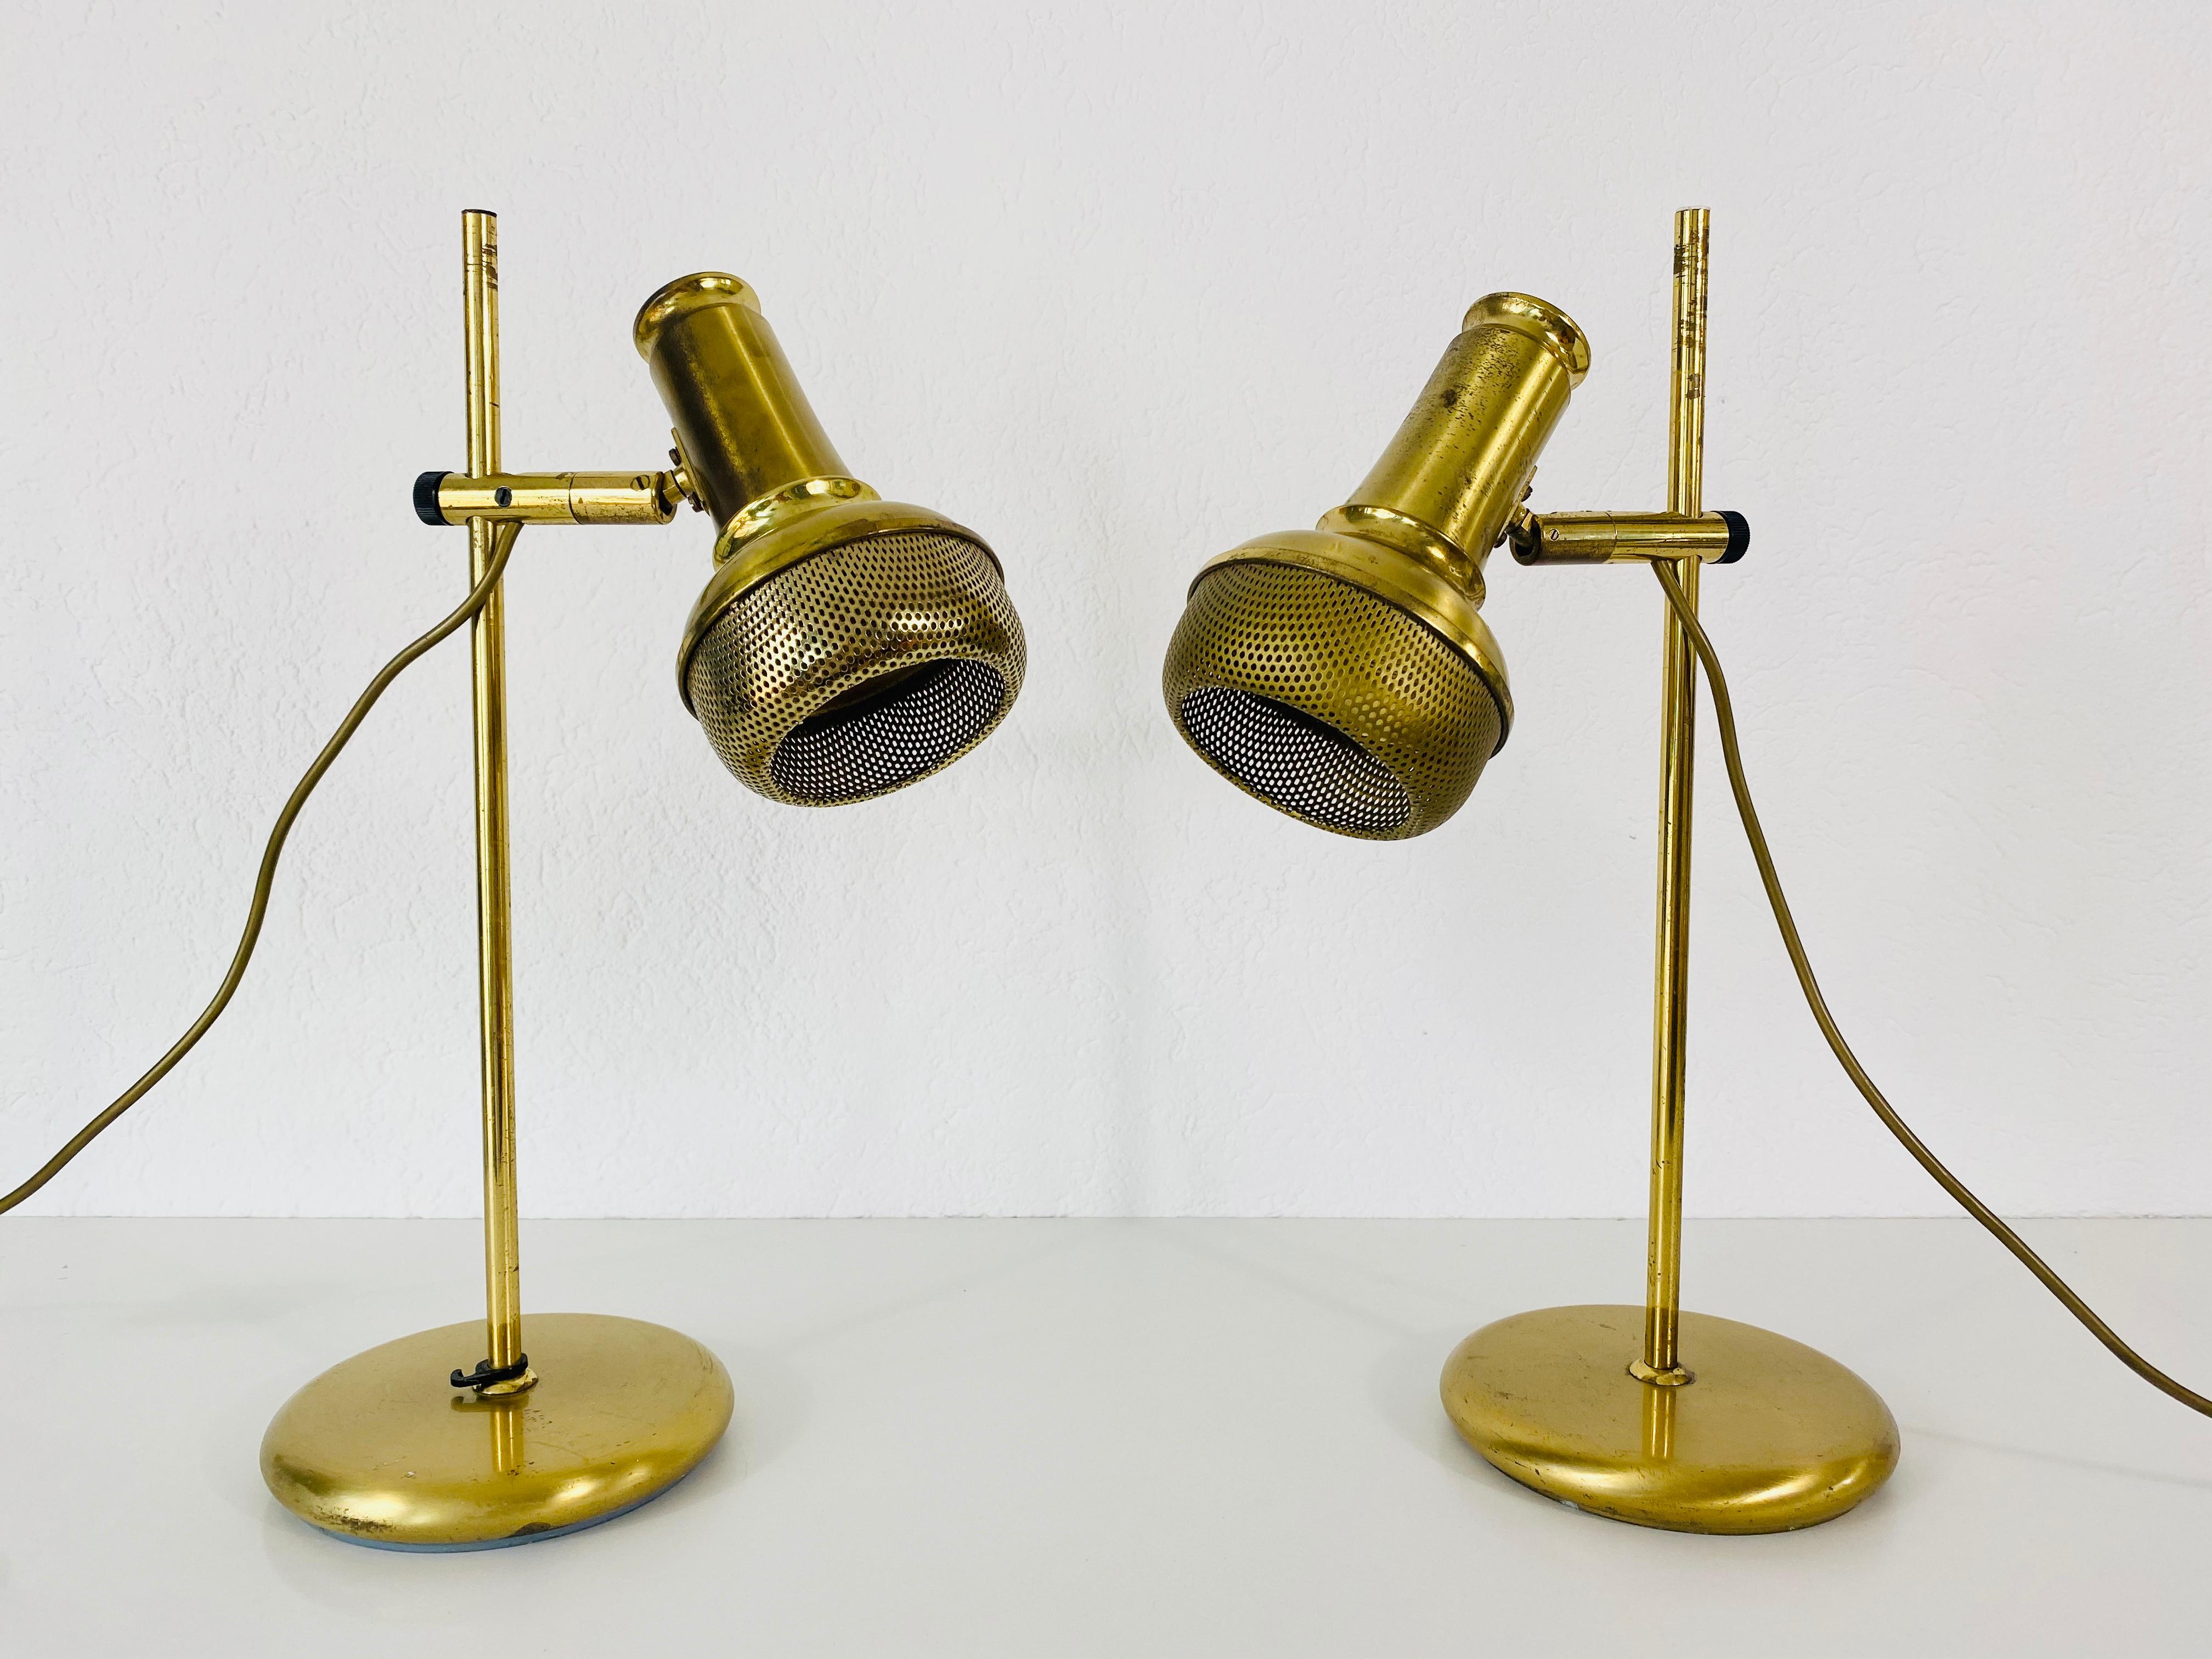 Ein schönes Paar Tischlampen aus der Mitte des Jahrhunderts, hergestellt in Deutschland in den 1960er Jahren. Sie fasziniert durch ihre schöne Farbe. Die Tischlampen sind aus poliertem Messing gefertigt.

Abmessungen:

Durchmesser der Basis 18